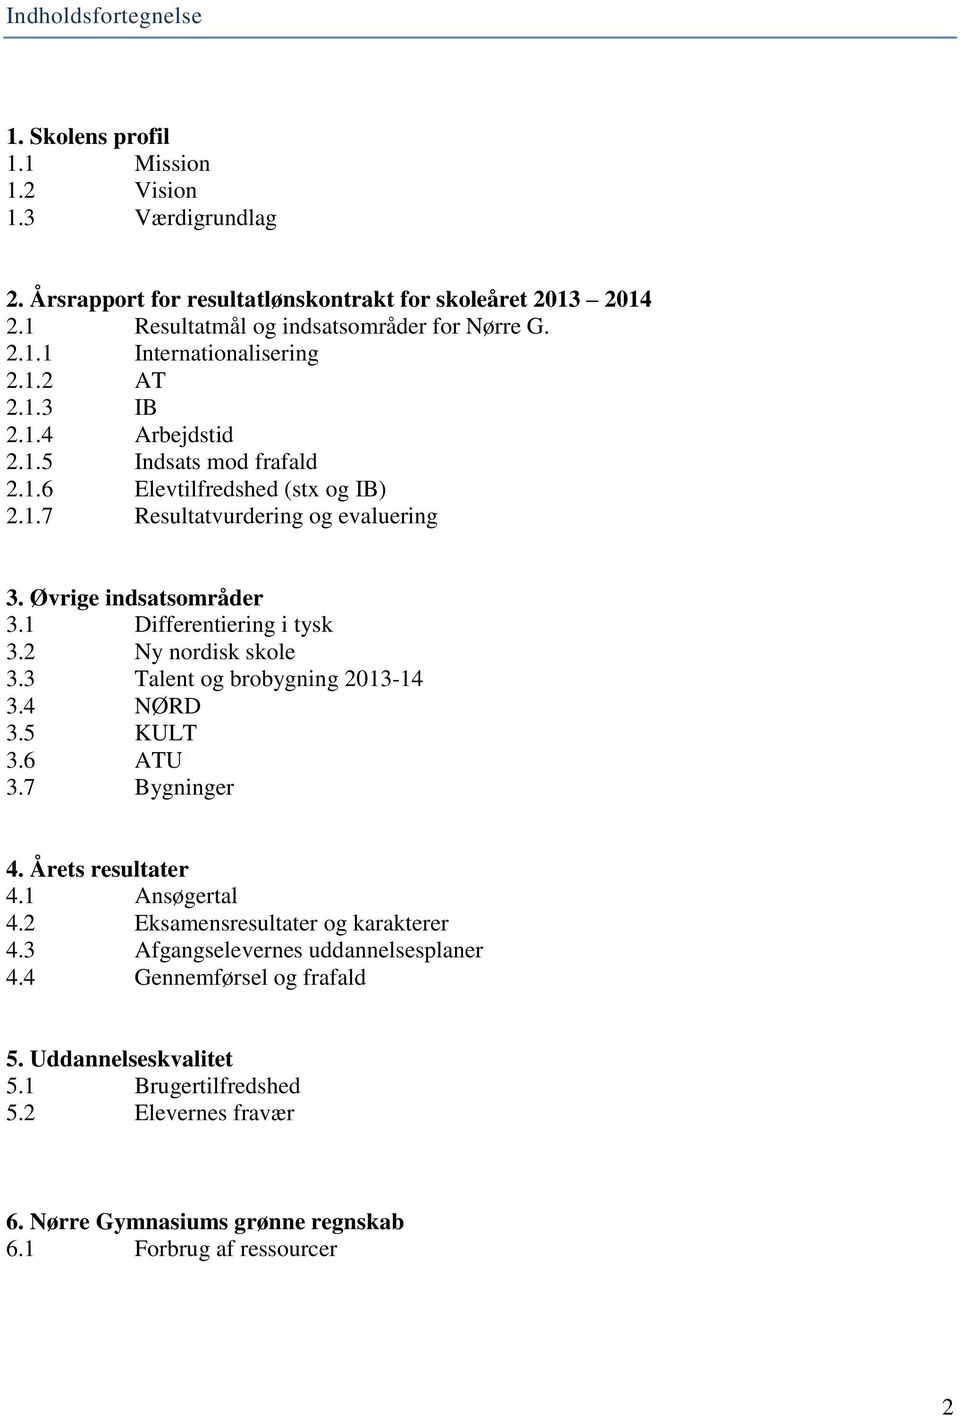 2 Ny nordisk skole 3.3 Talent og brobygning 2013-14 3.4 NØRD 3.5 KULT 3.6 ATU 3.7 Bygninger 4. Årets resultater 4.1 Ansøgertal 4.2 Eksamensresultater og karakterer 4.